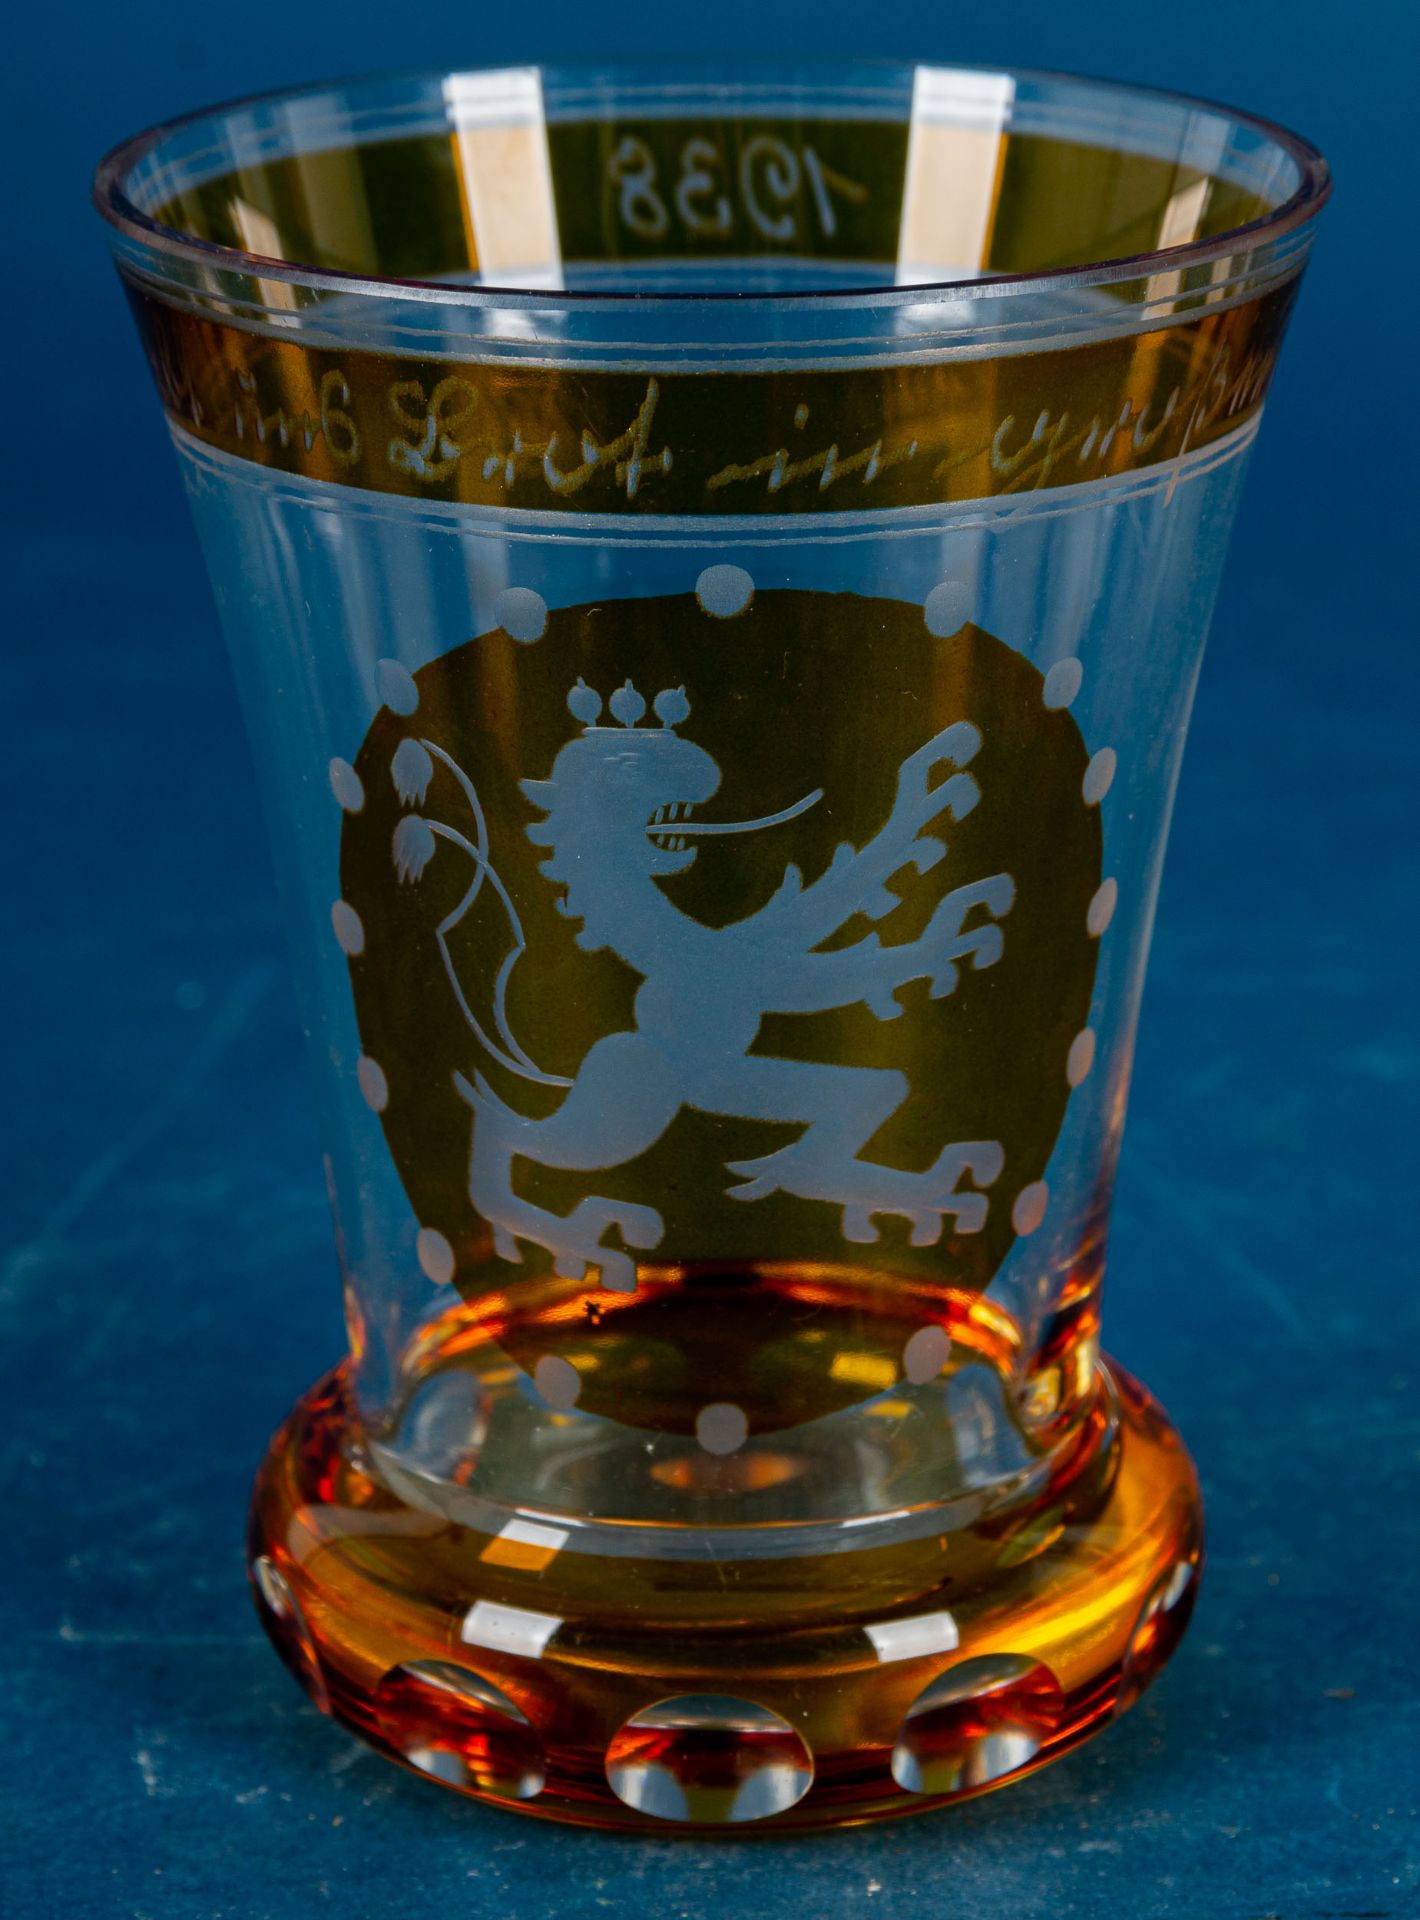 "Ihr gabt uns Brot in großer Not", bernsteinfarbener Pokalbecher, böhmisches Glas von 1938, sehr sc